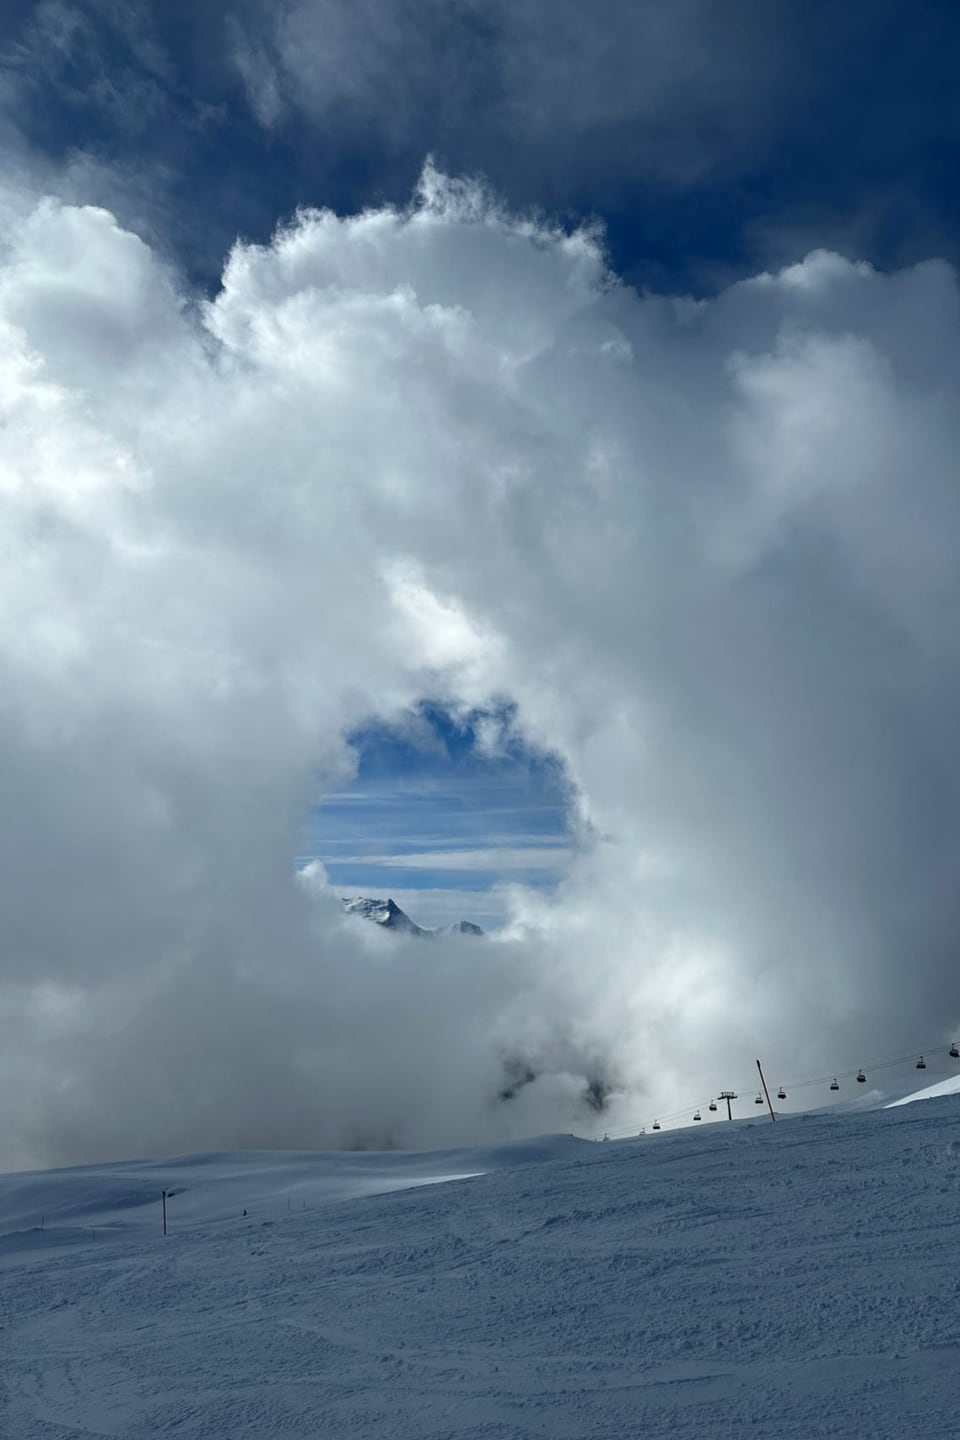  Skigebiet mit riesiger Wolke, in der ein Loch zu sehen ist.